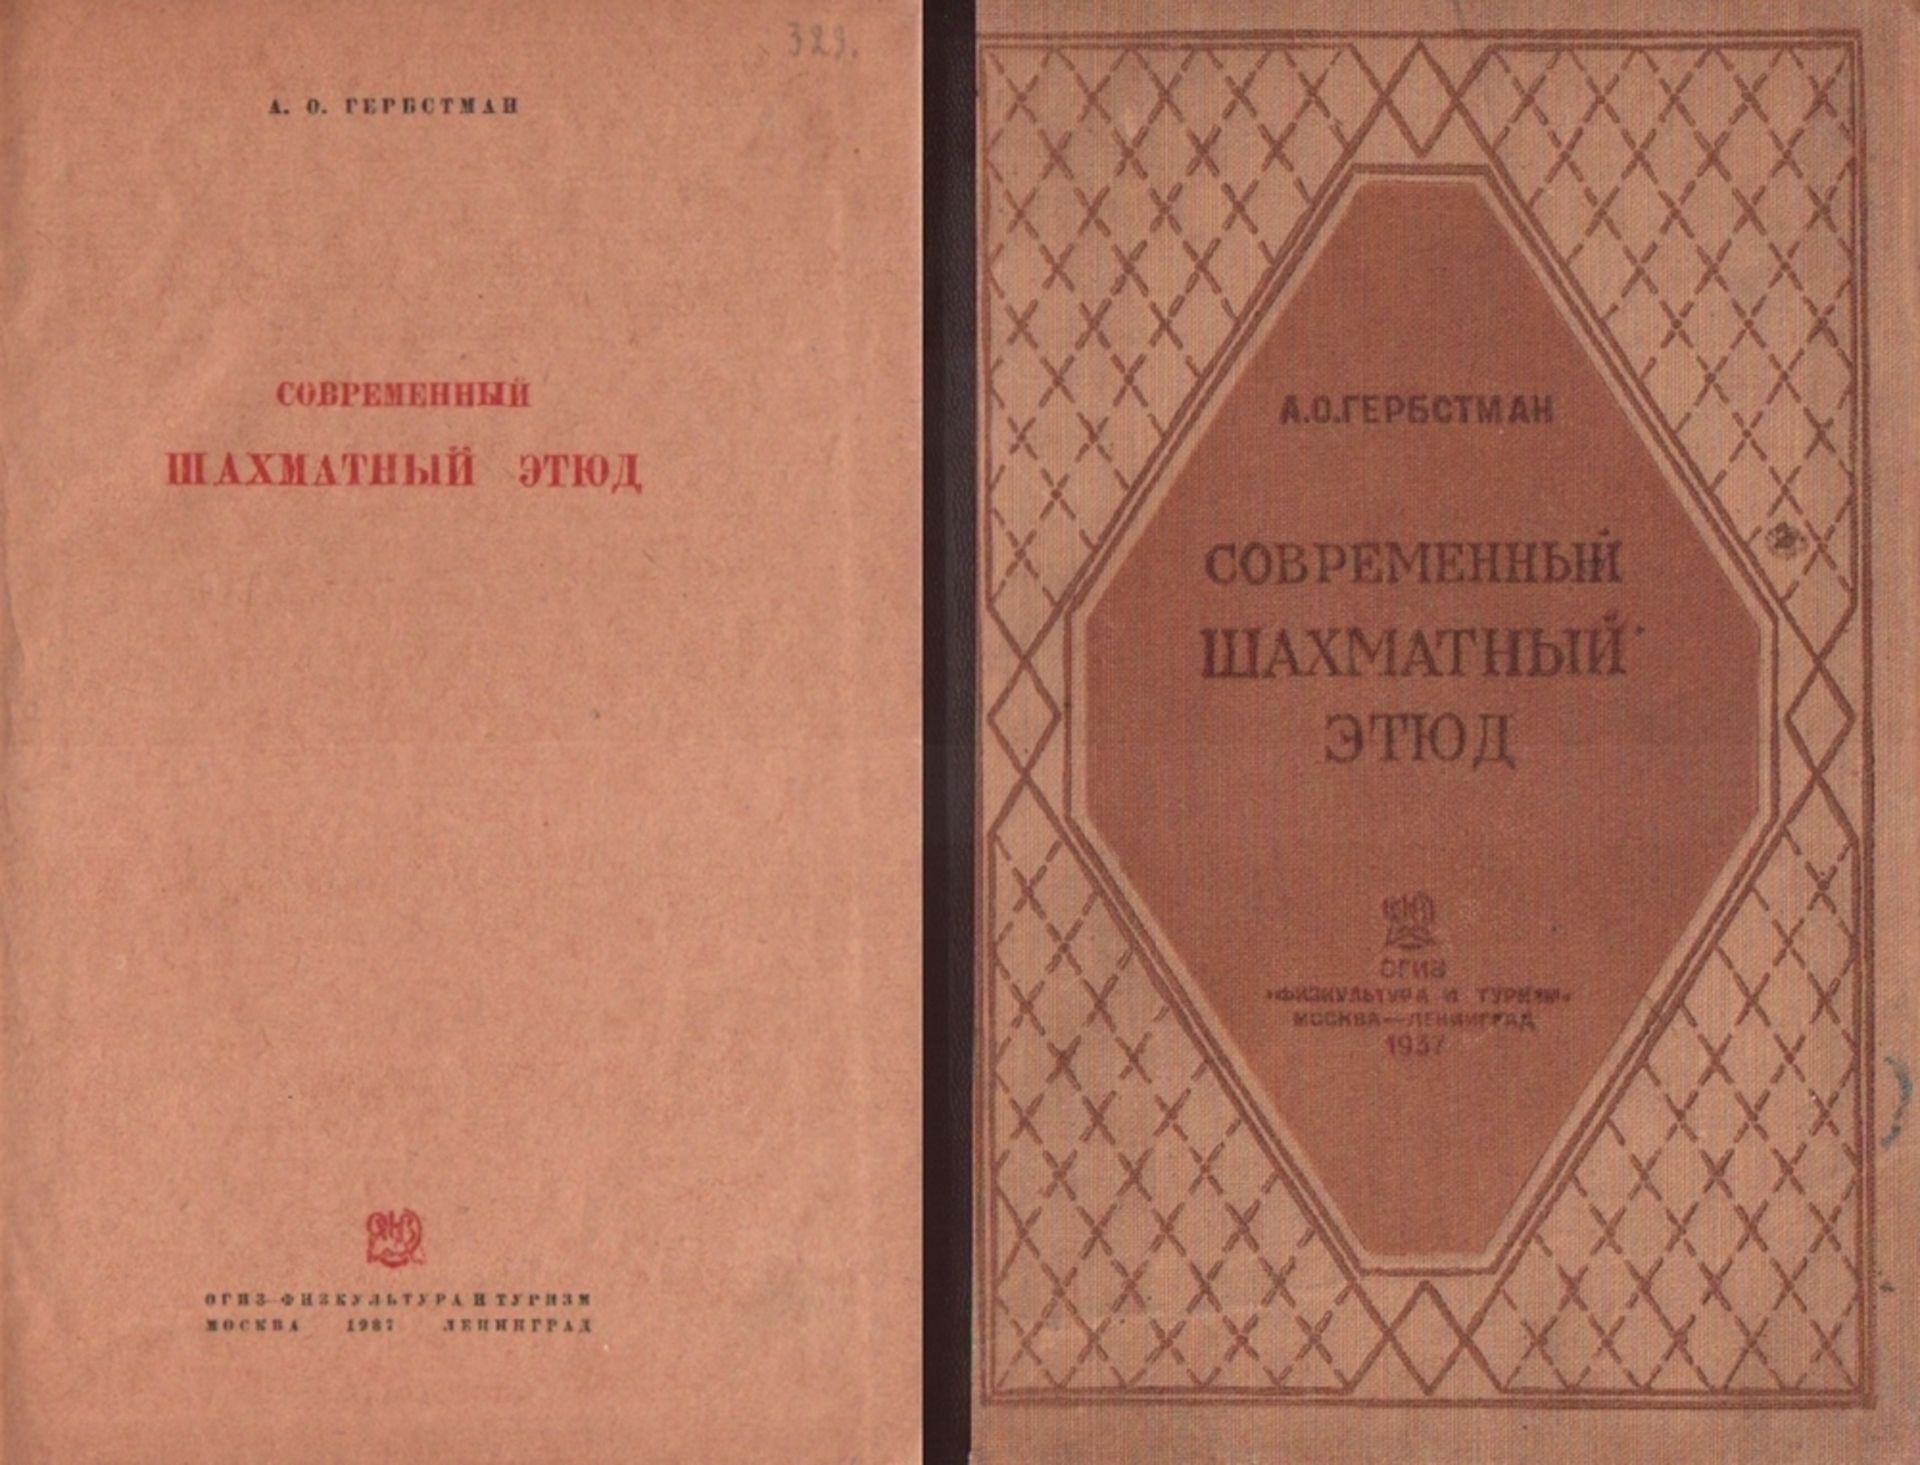 Herbstman, A. O. Sowremennyj schachmatnyj etjud. Moskau und Leningrad, Fiskultura i Turism, 1937. 8°